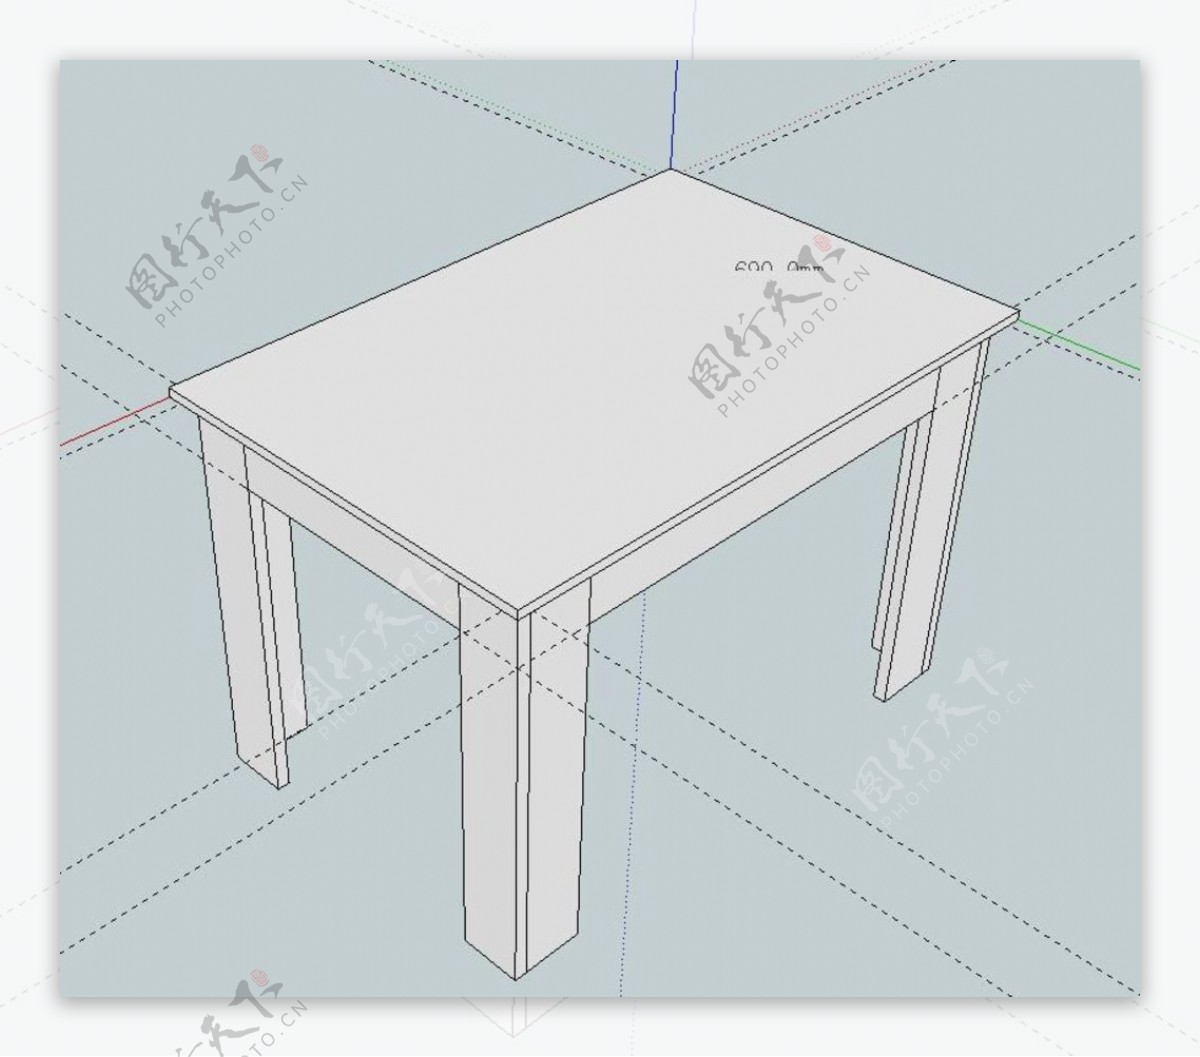 板式餐桌模型